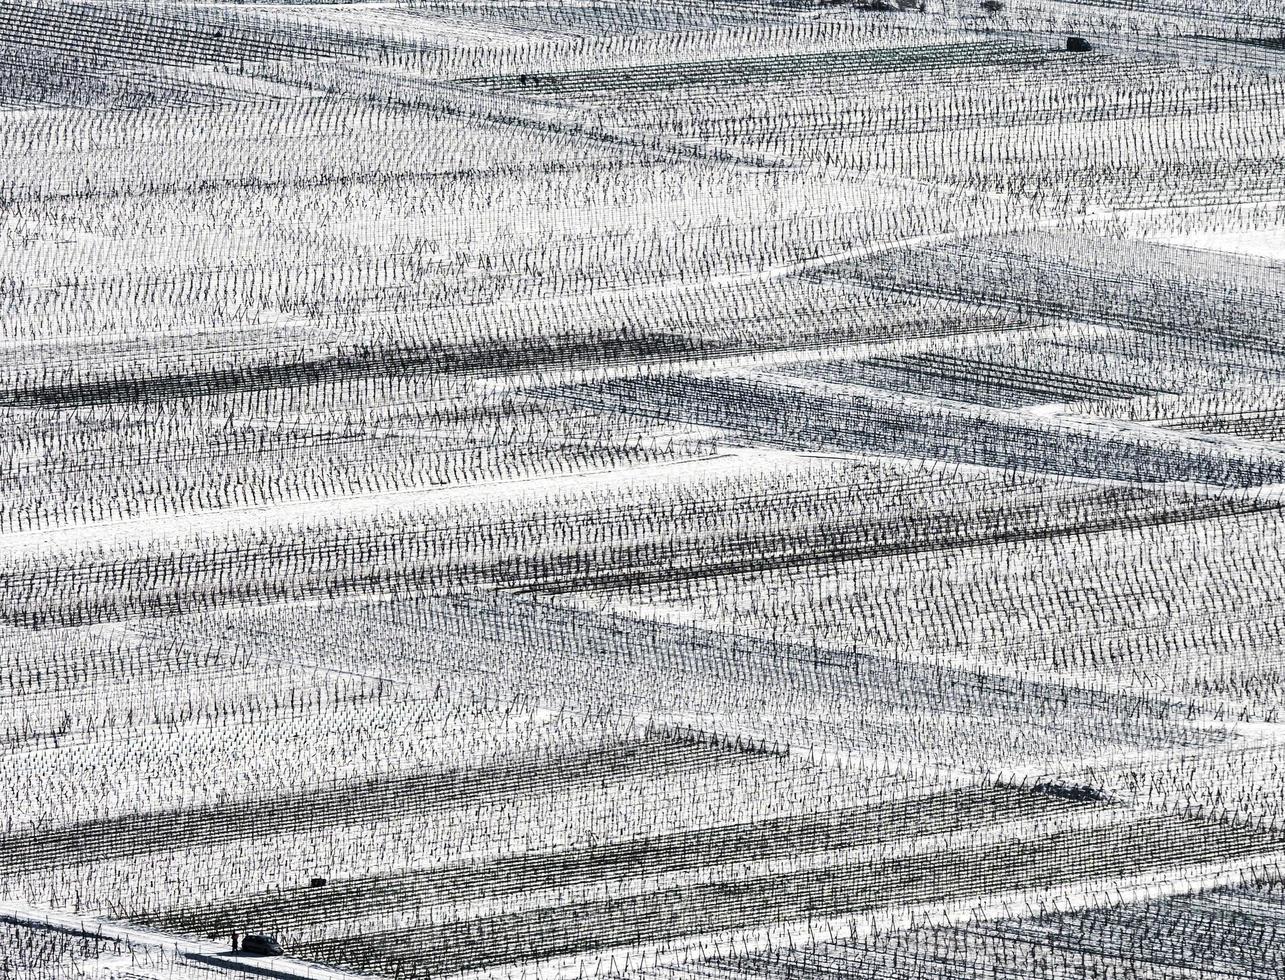 vista panorâmica dos vinhedos cobertos de neve no vale do Reno foto